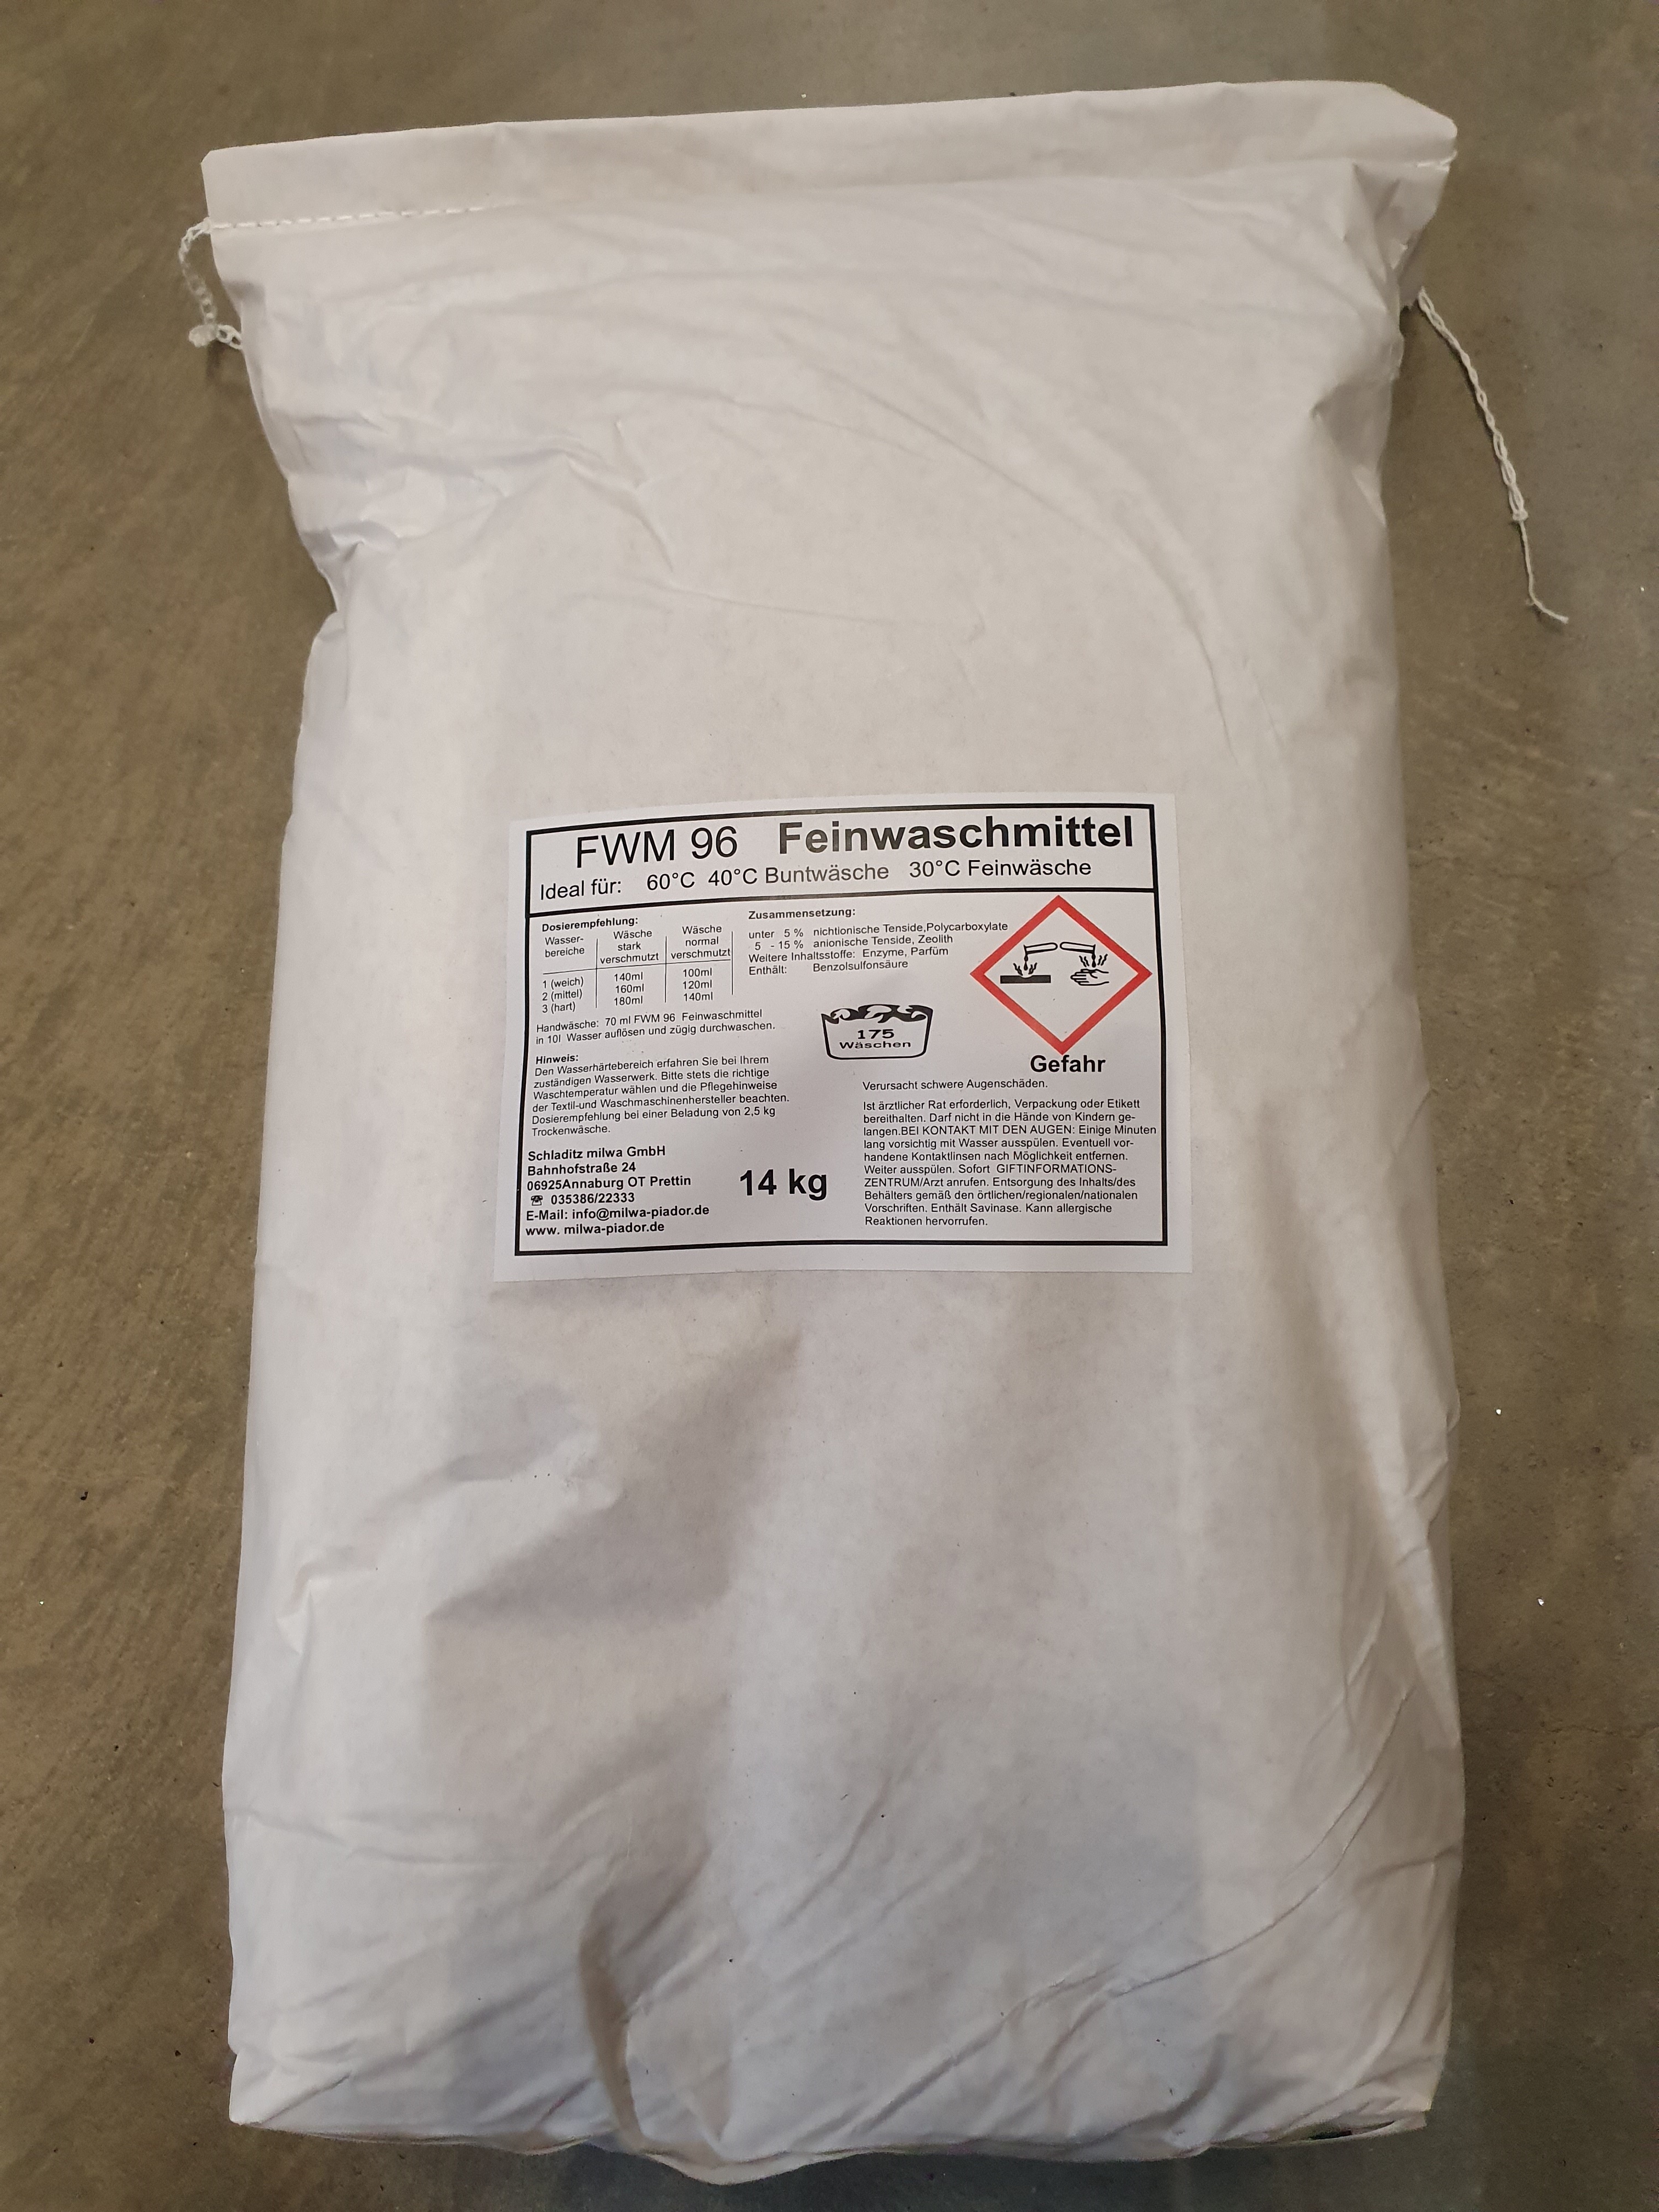 Feinwaschmitel  R16    14 kg 